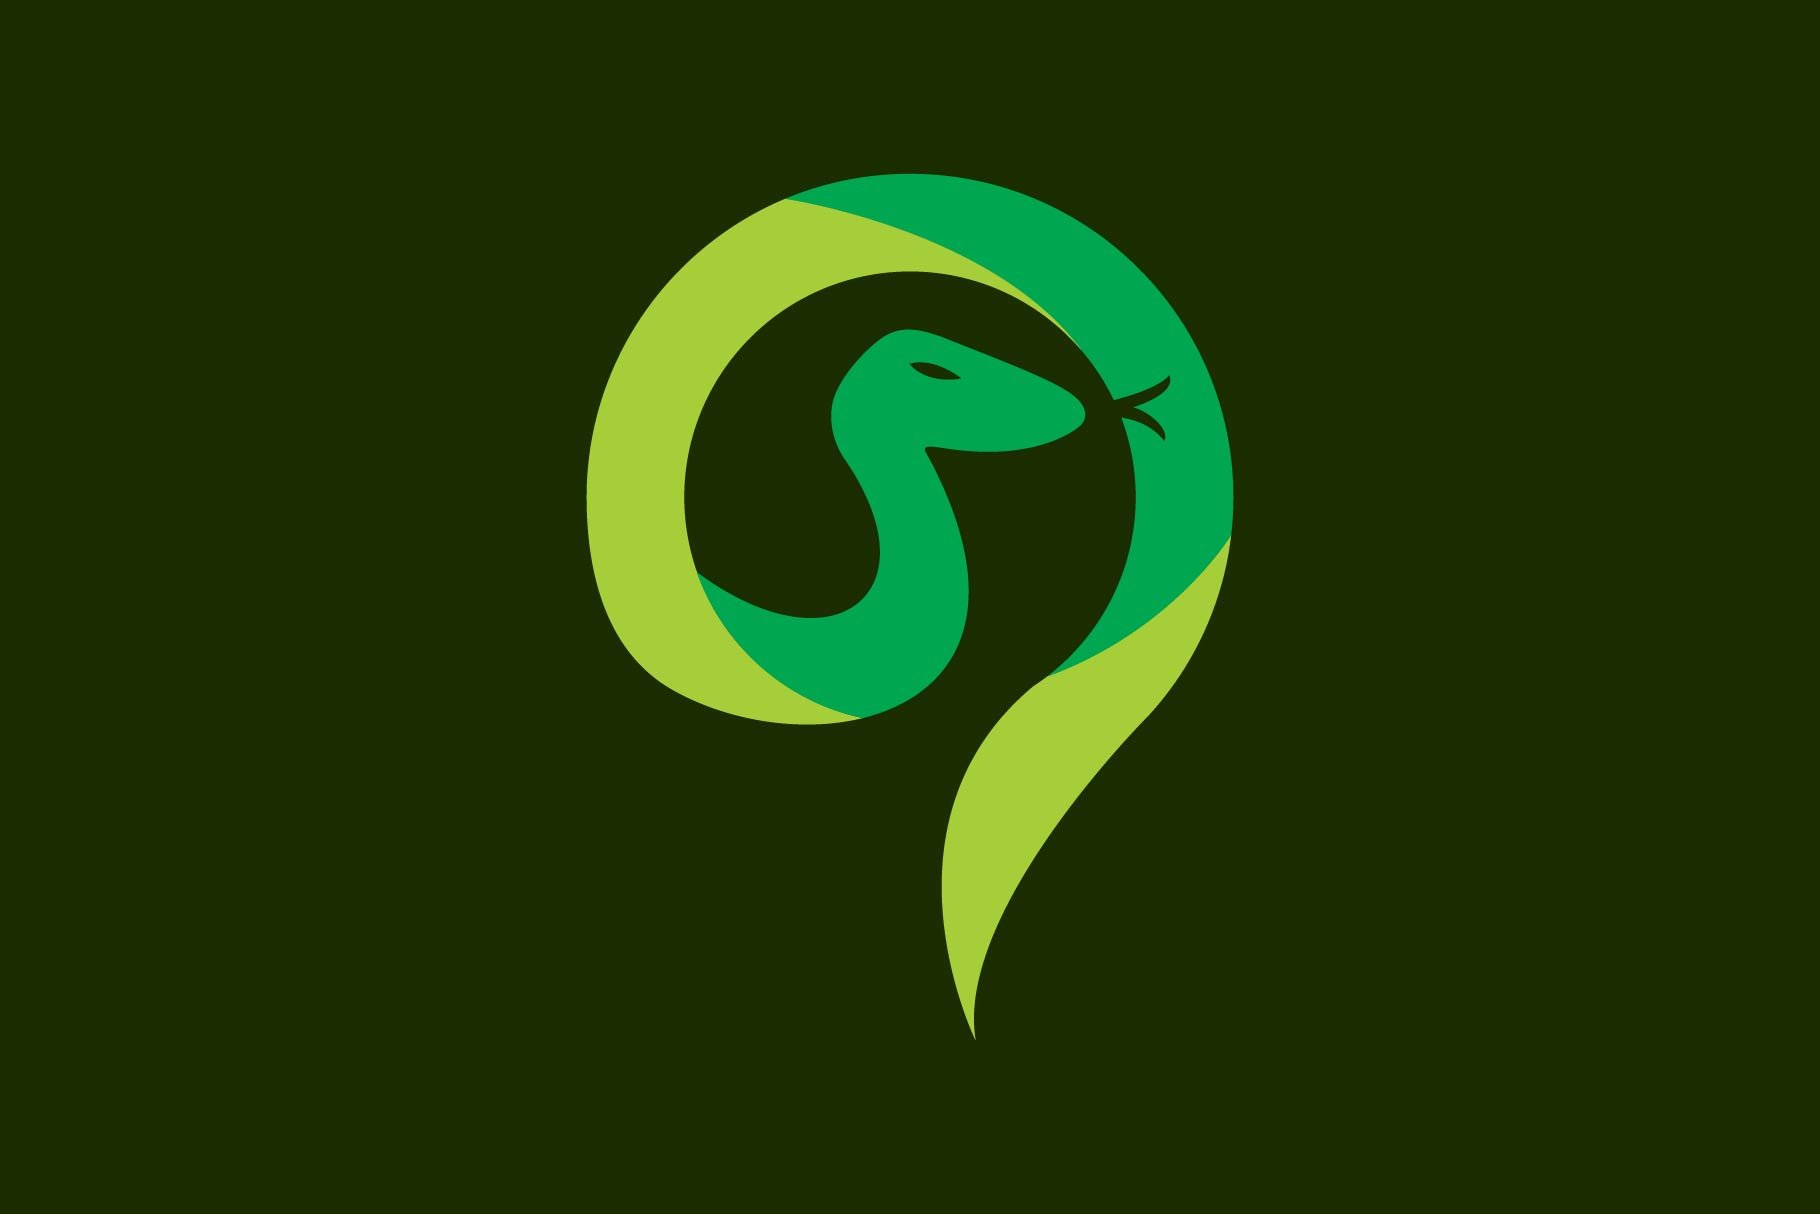 snake logo cover image.